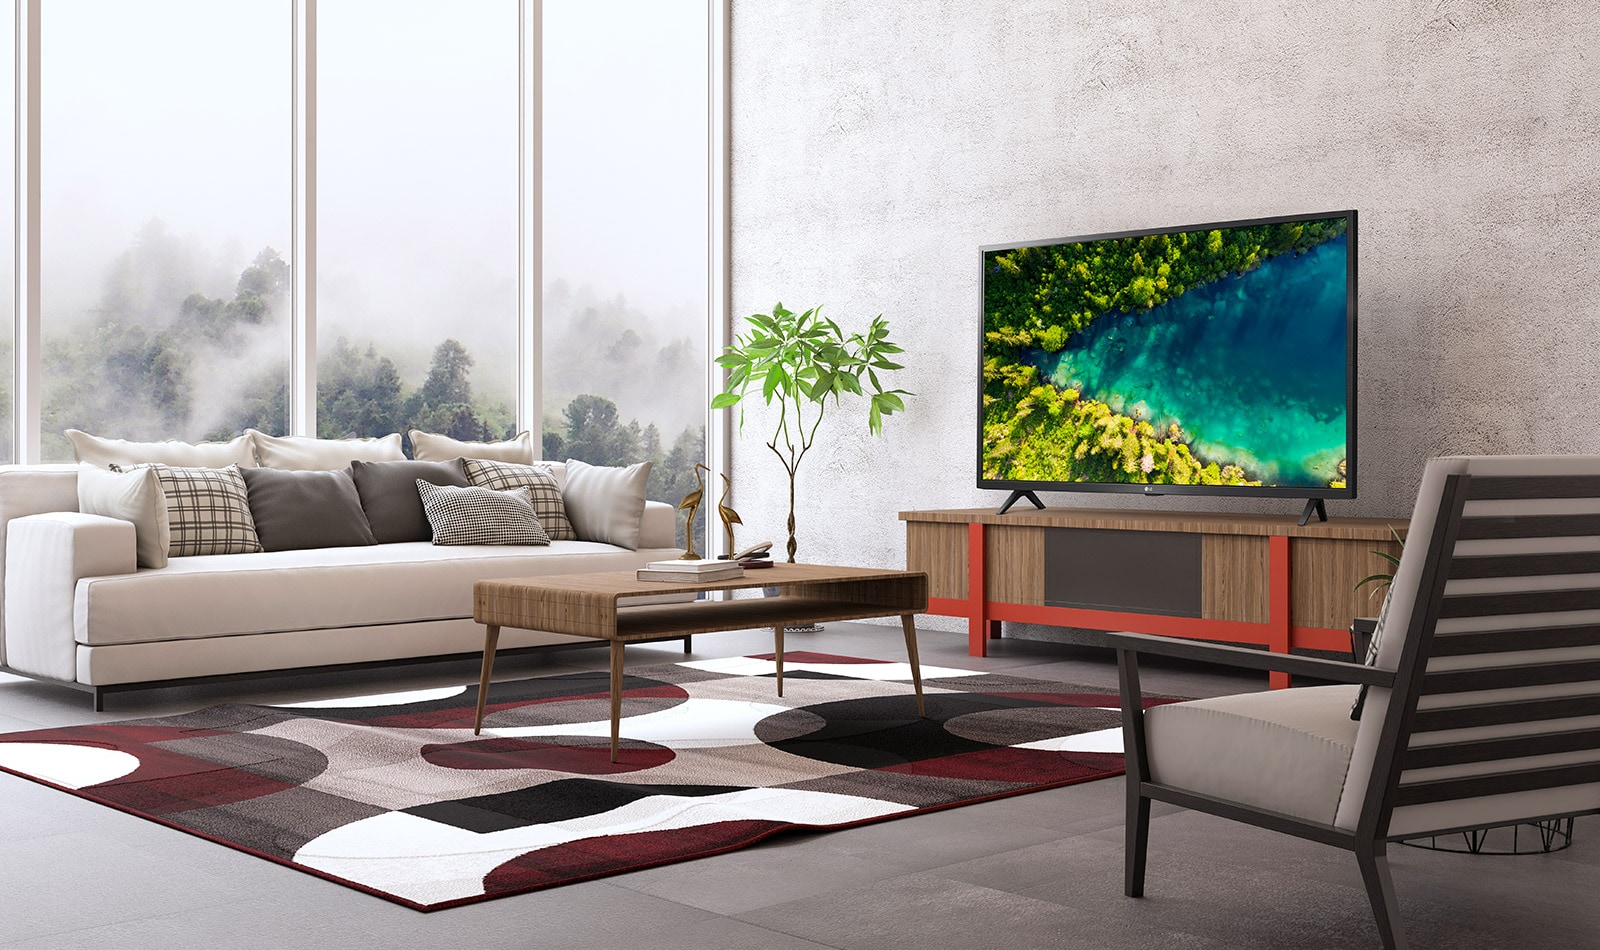 No ambiente de uma sala básica e moderna, a TV mostra a vista superior de um rio correndo por uma densa floresta.